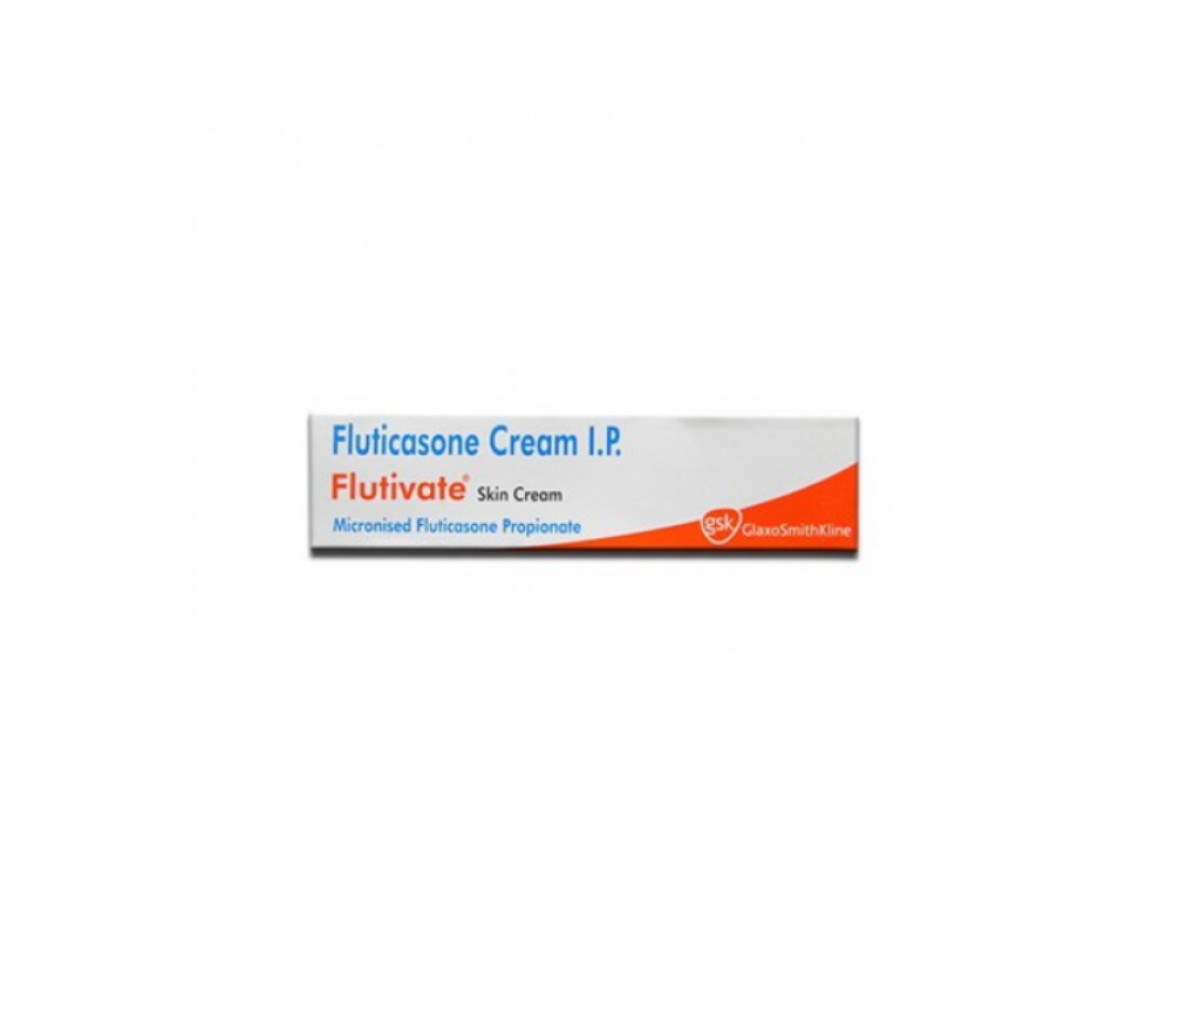 Flutivate 0.05% Cream